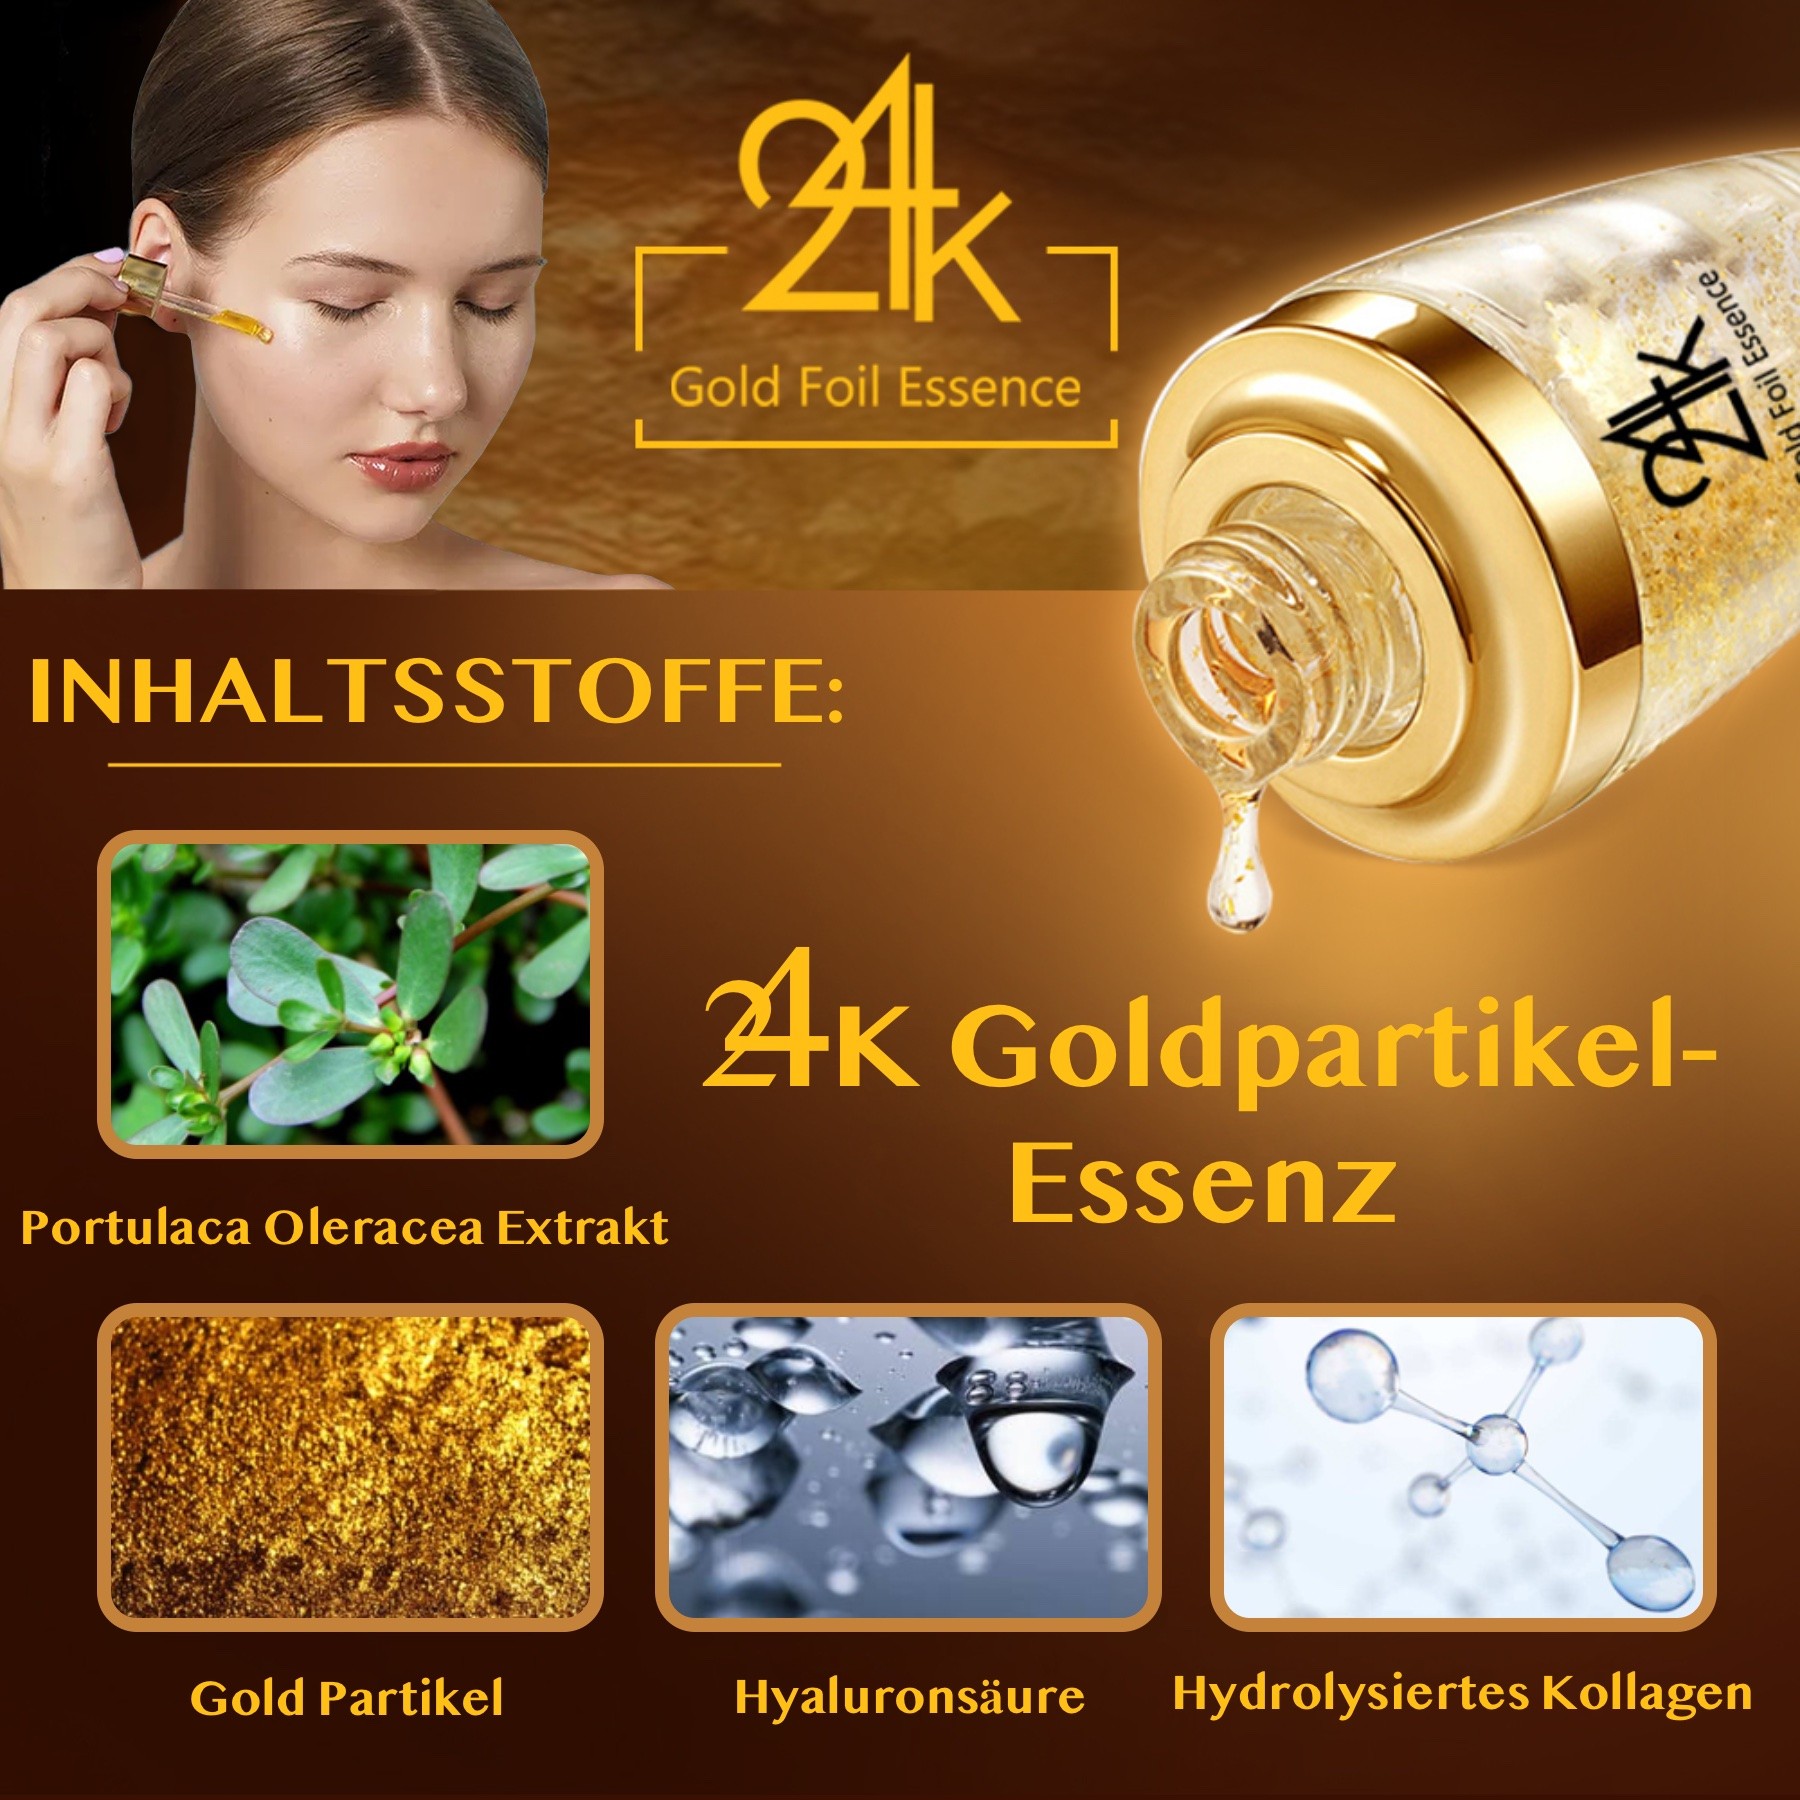 Crystal Collagen Gold Set Gesichtsmaske Augenpads Essenz Serum Lippen Maske 24K